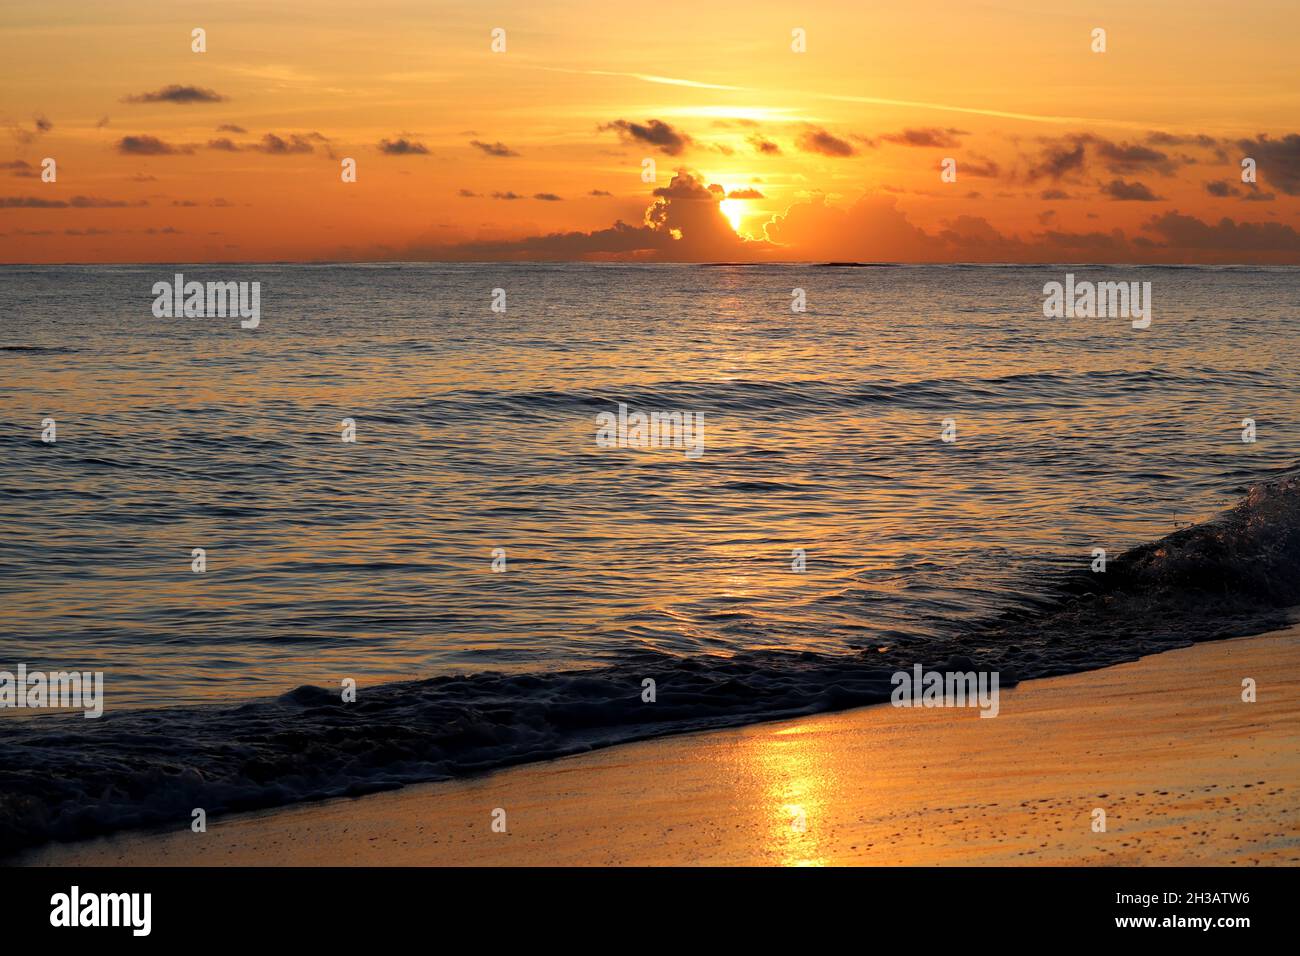 Coucher de soleil sur une plage de sable, soleil orange brille à travers les nuages.Soirée mer, fond pour un voyage romantique Banque D'Images